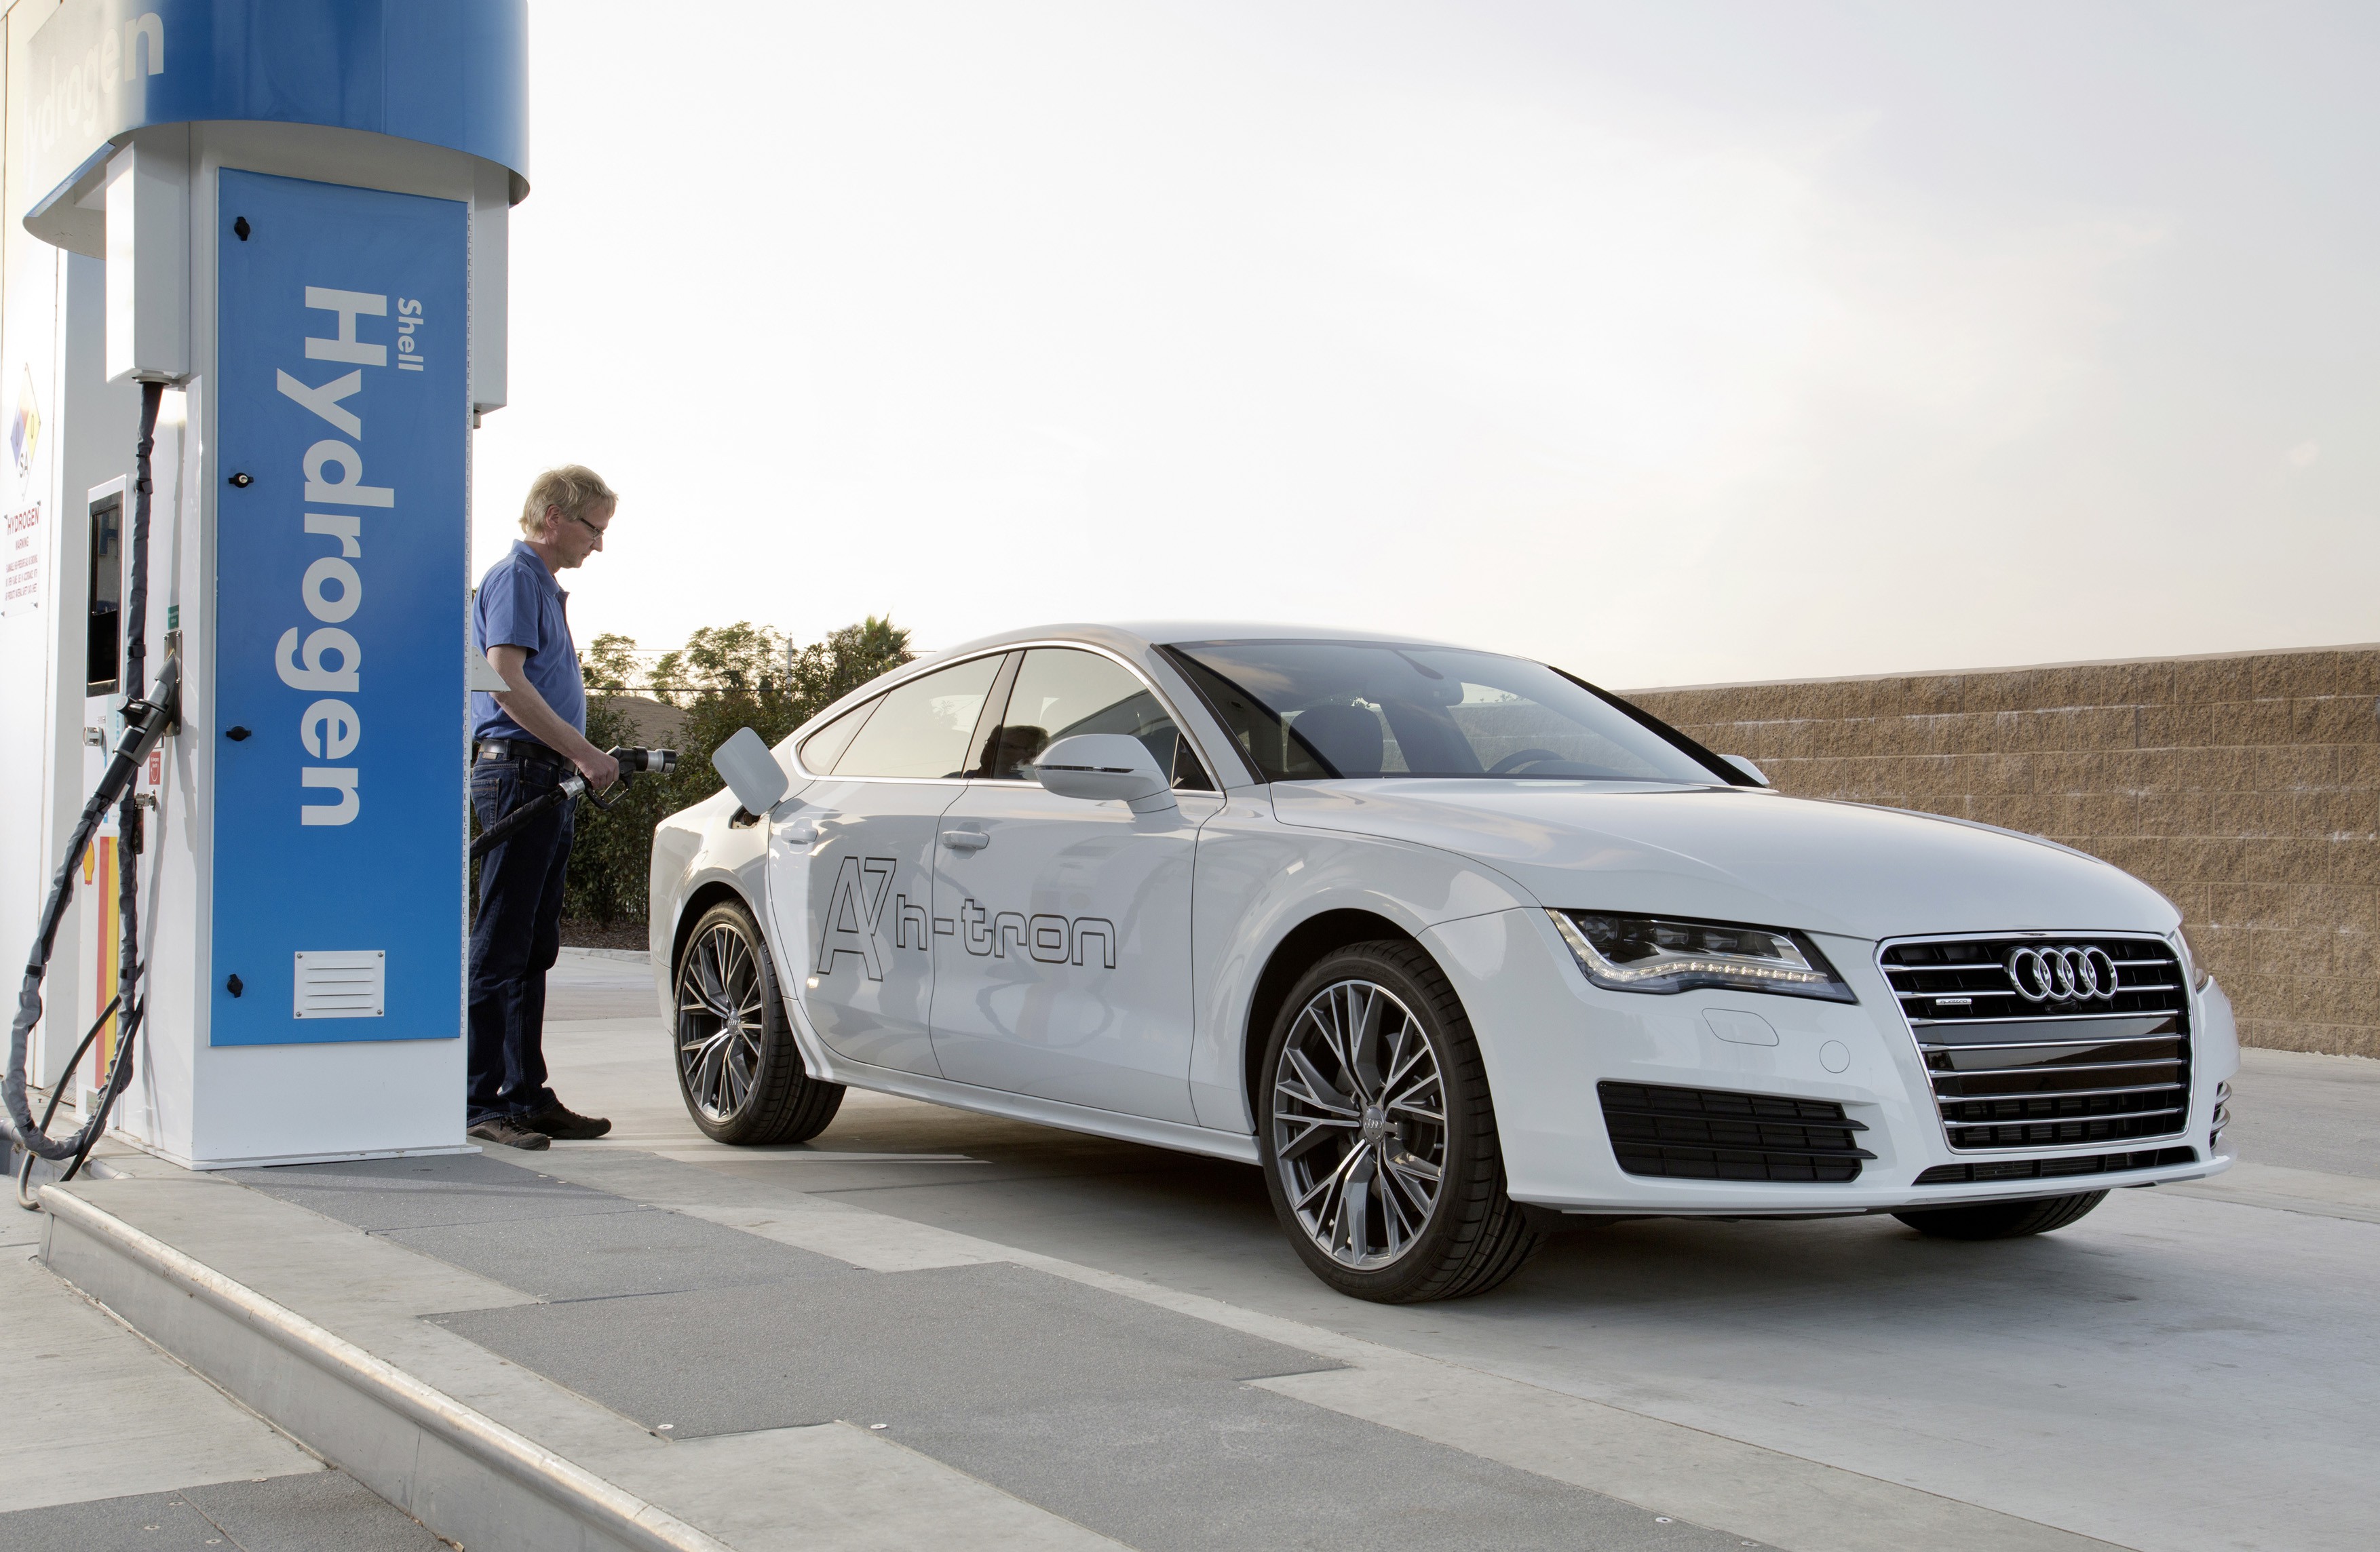 Audi compra patentes de pilas de combustible por 70 millones de euros